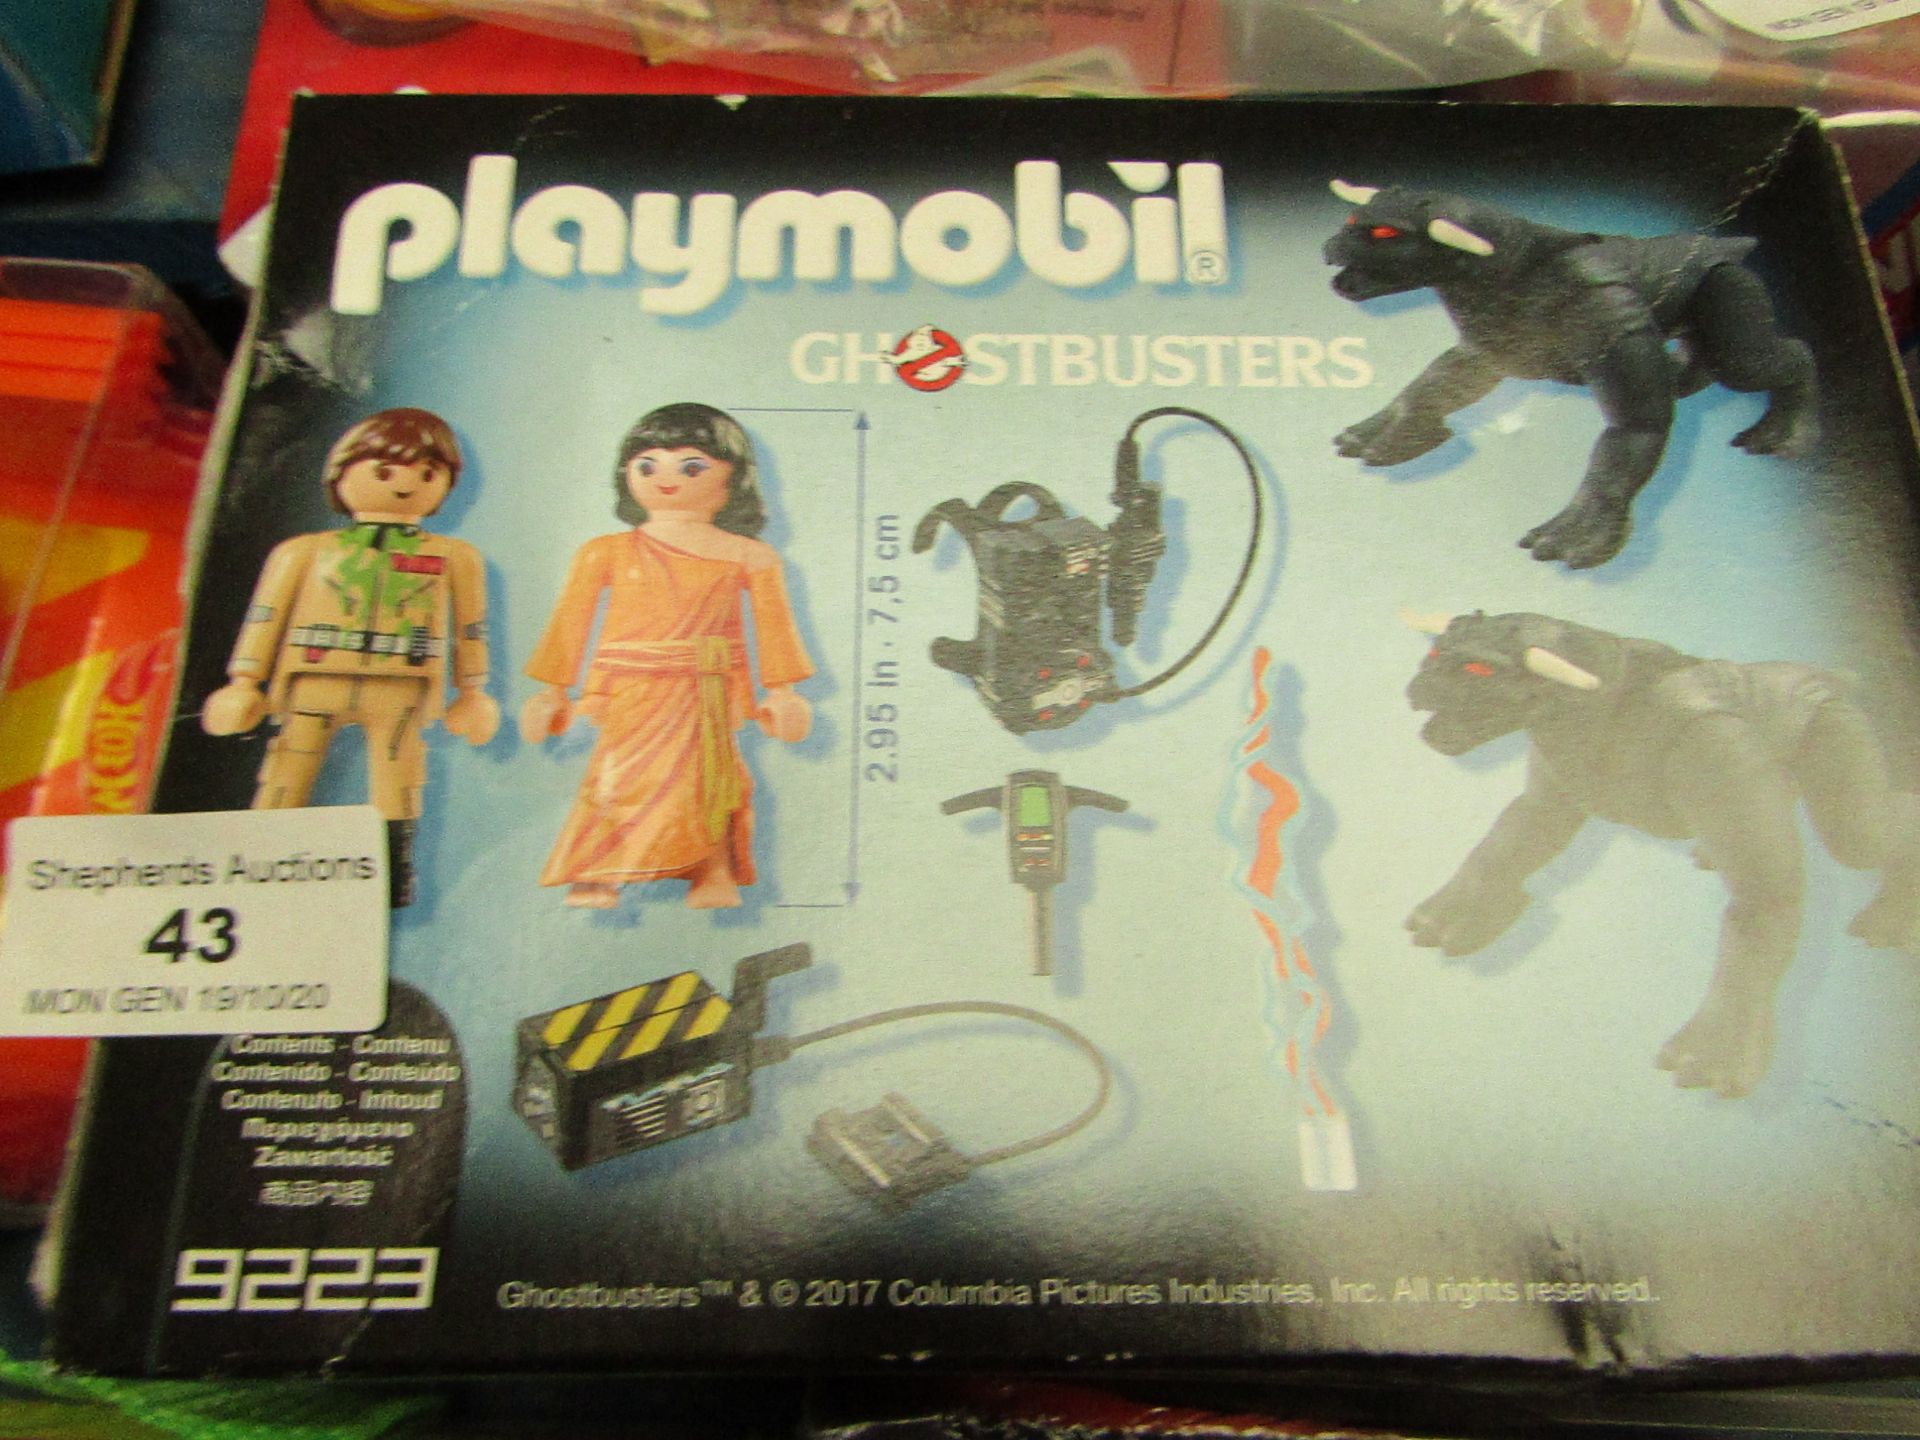 Playmobil - GhoostBusters - Unused & Boxed.